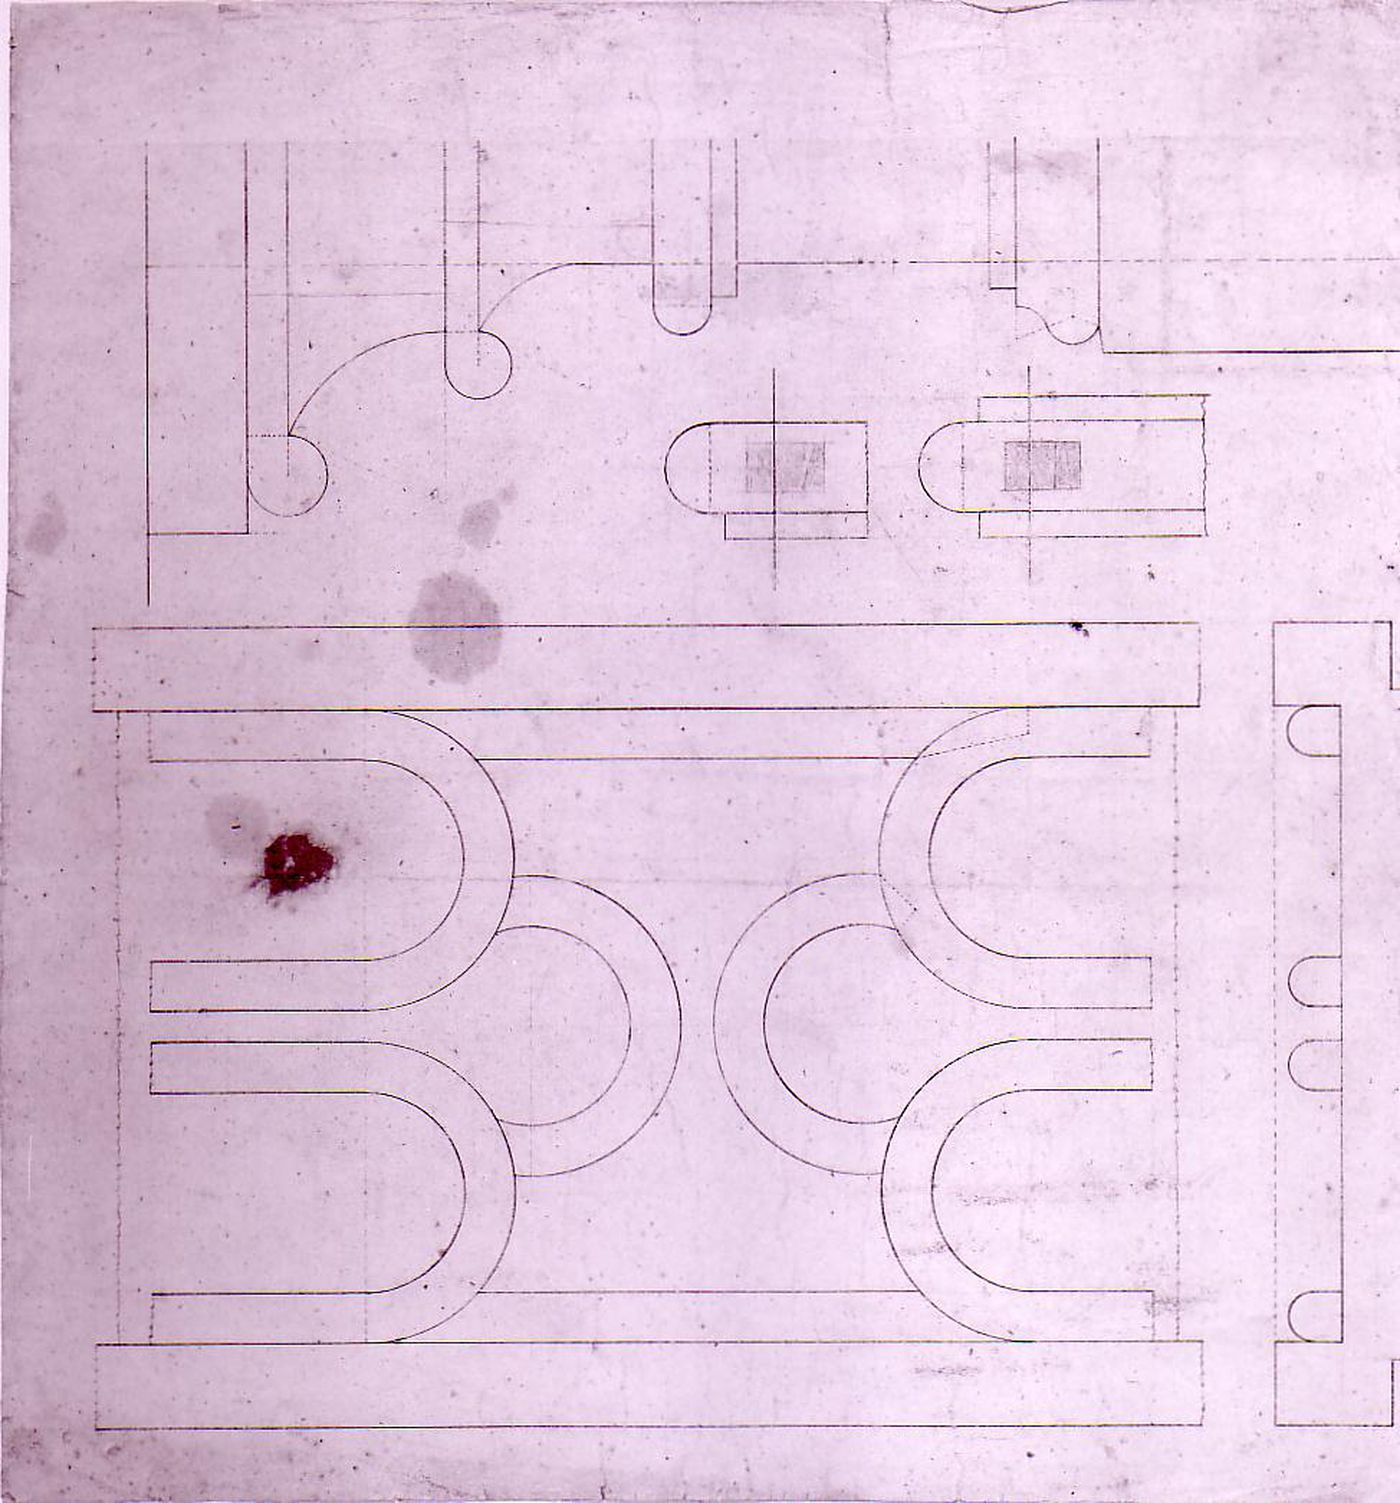 Plans, elevations and section for decorative details for Notre-Dame de Montréal